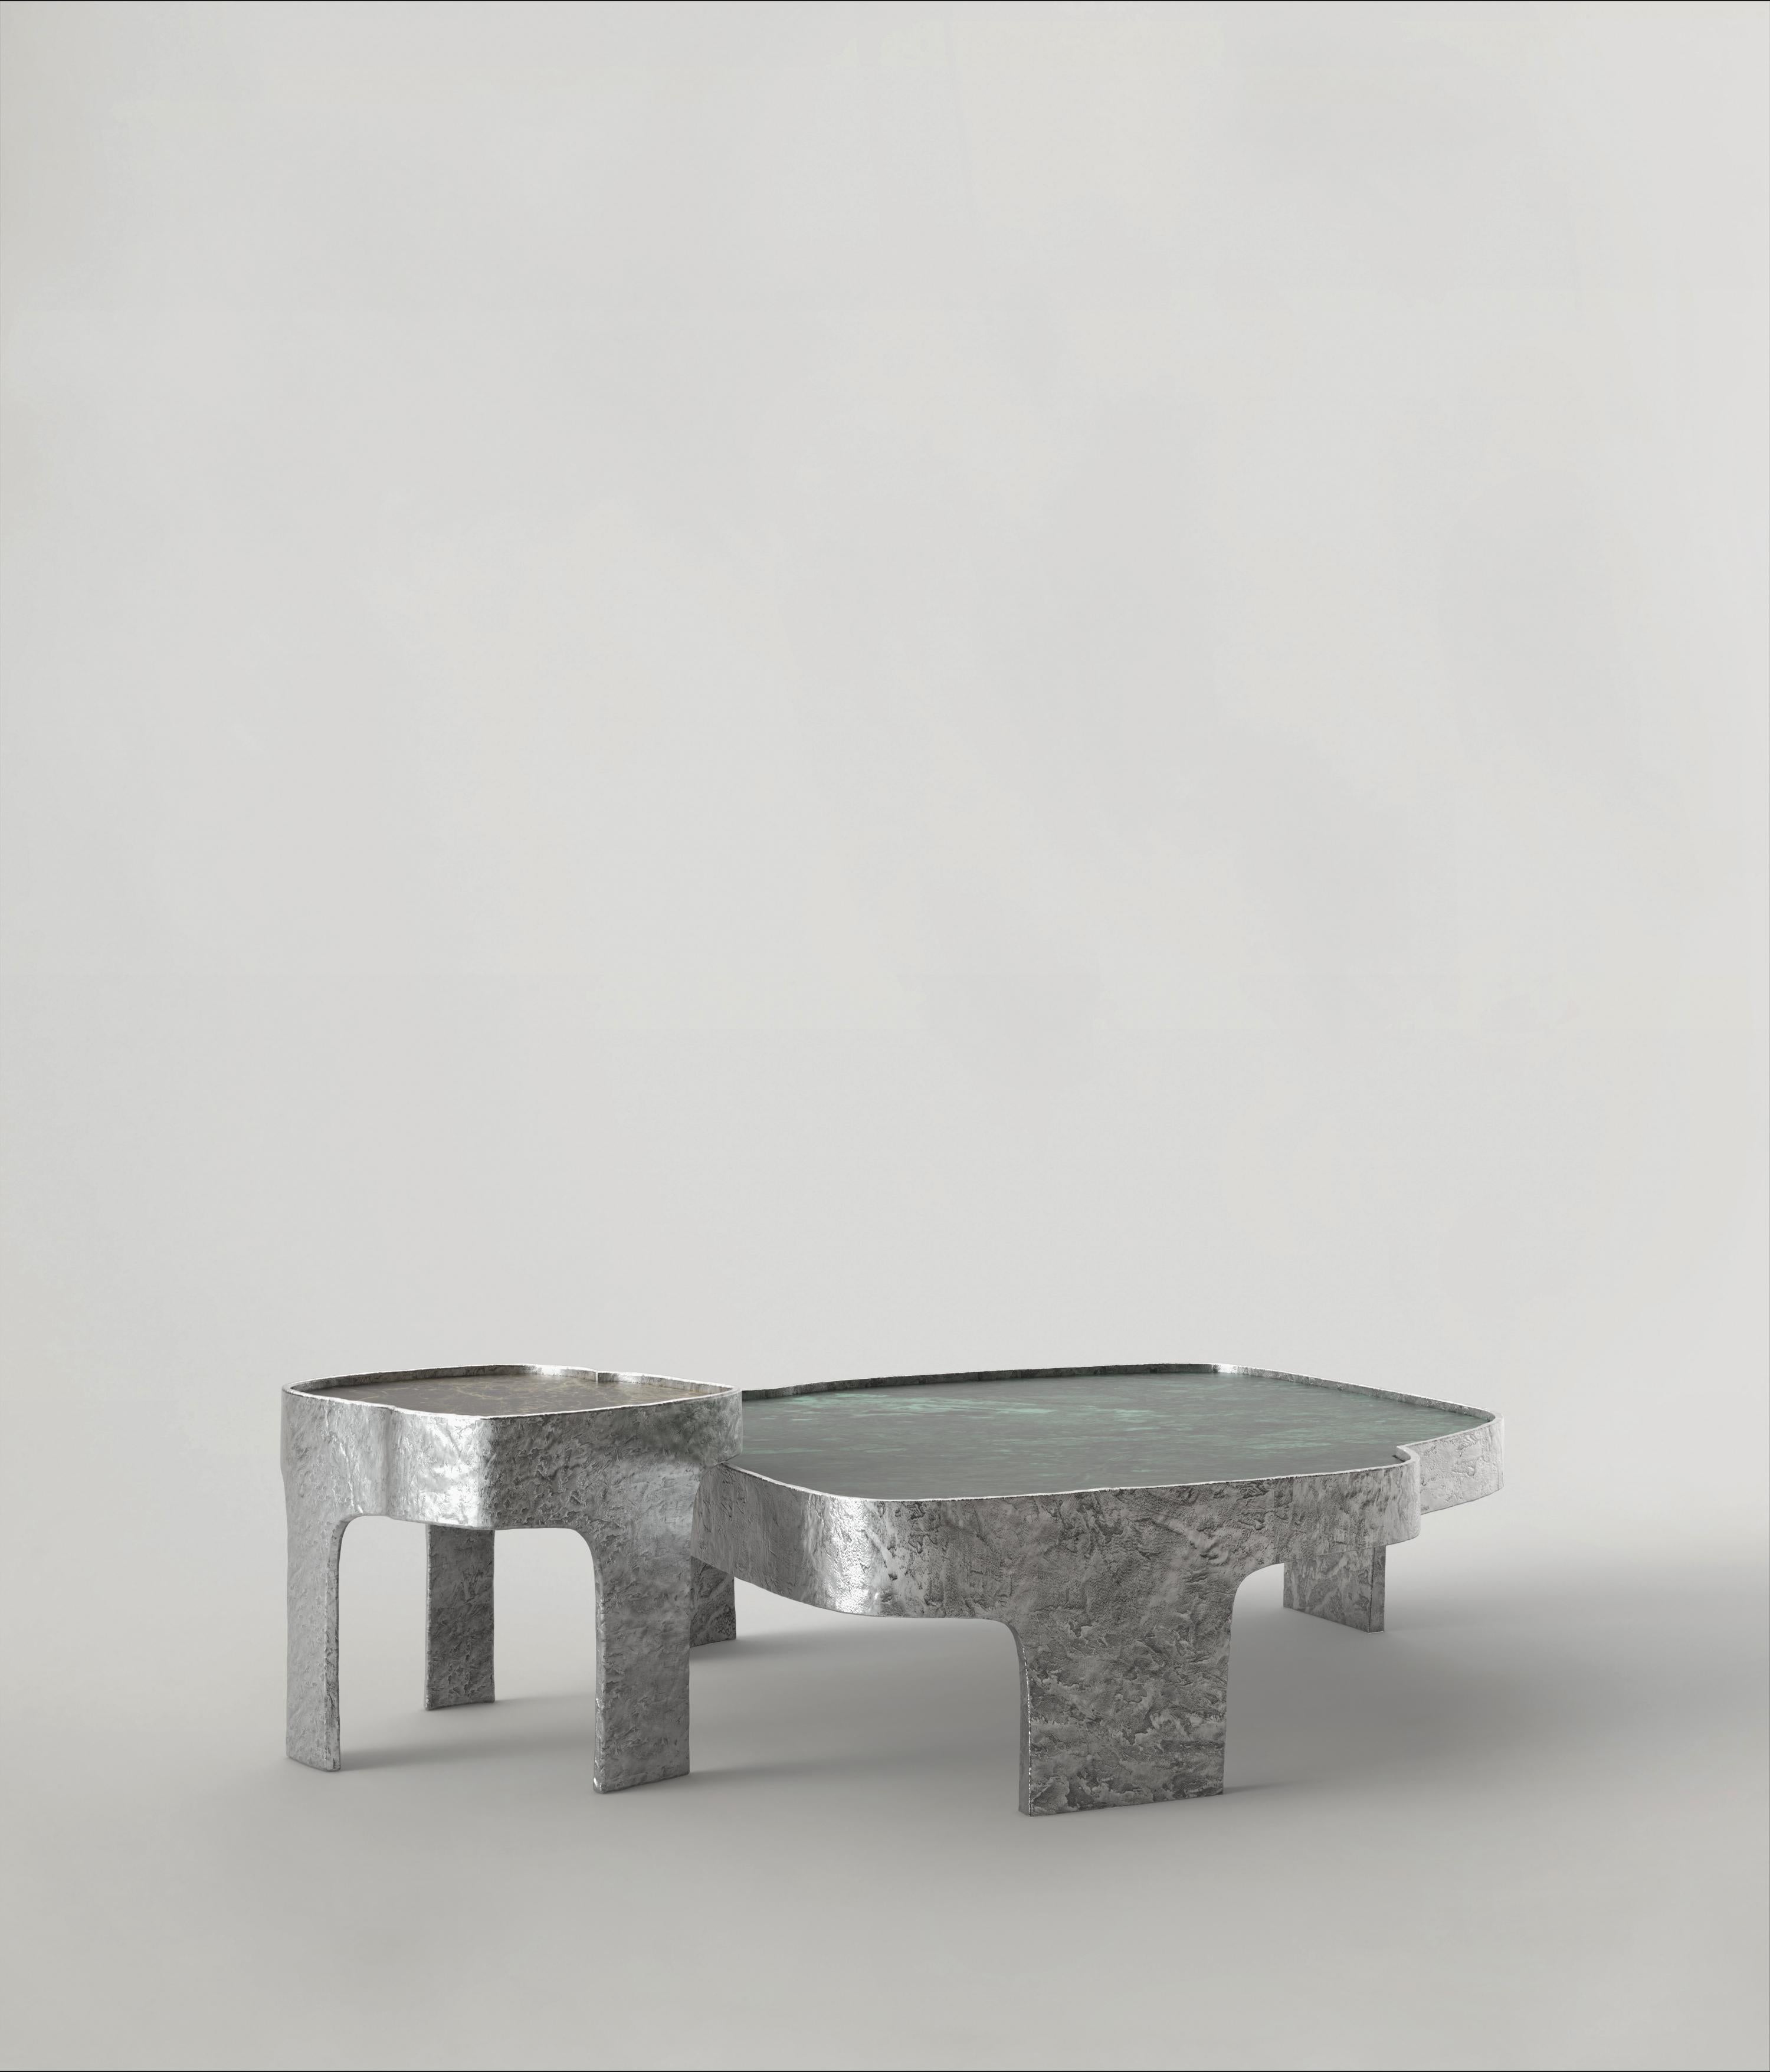 Contemporary Sumatra V1 Side Table by Edizione Limitata